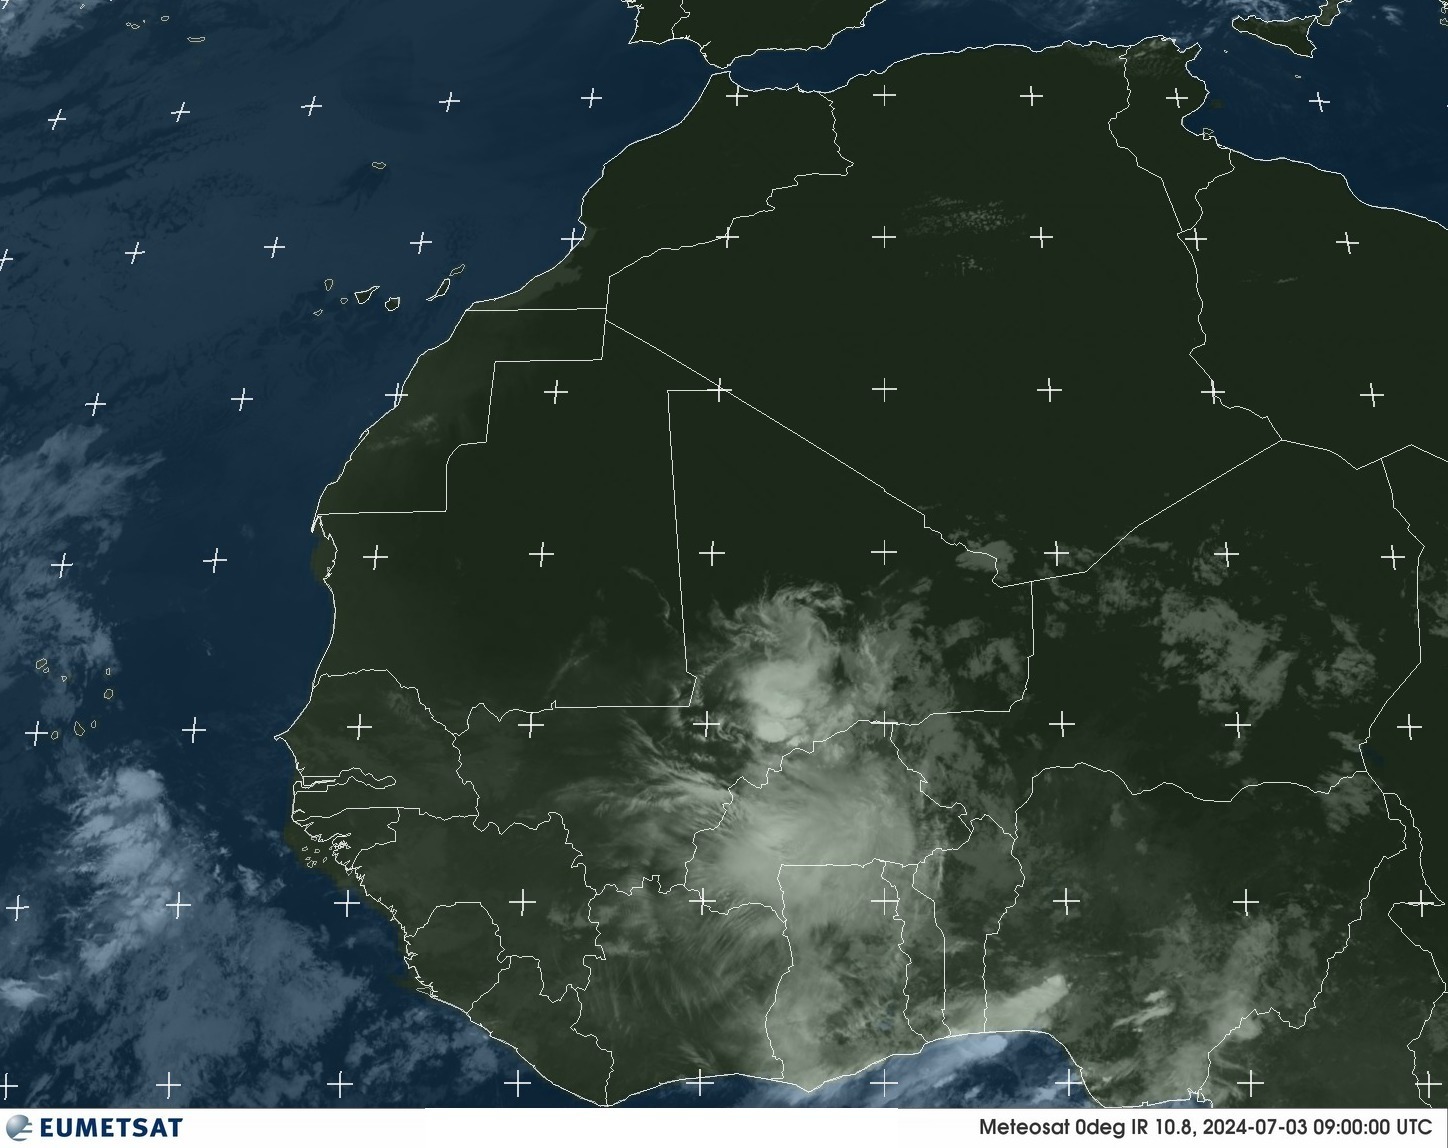 Satelliten - Golf von Guinea - Mi, 03.07. 12:00 MESZ